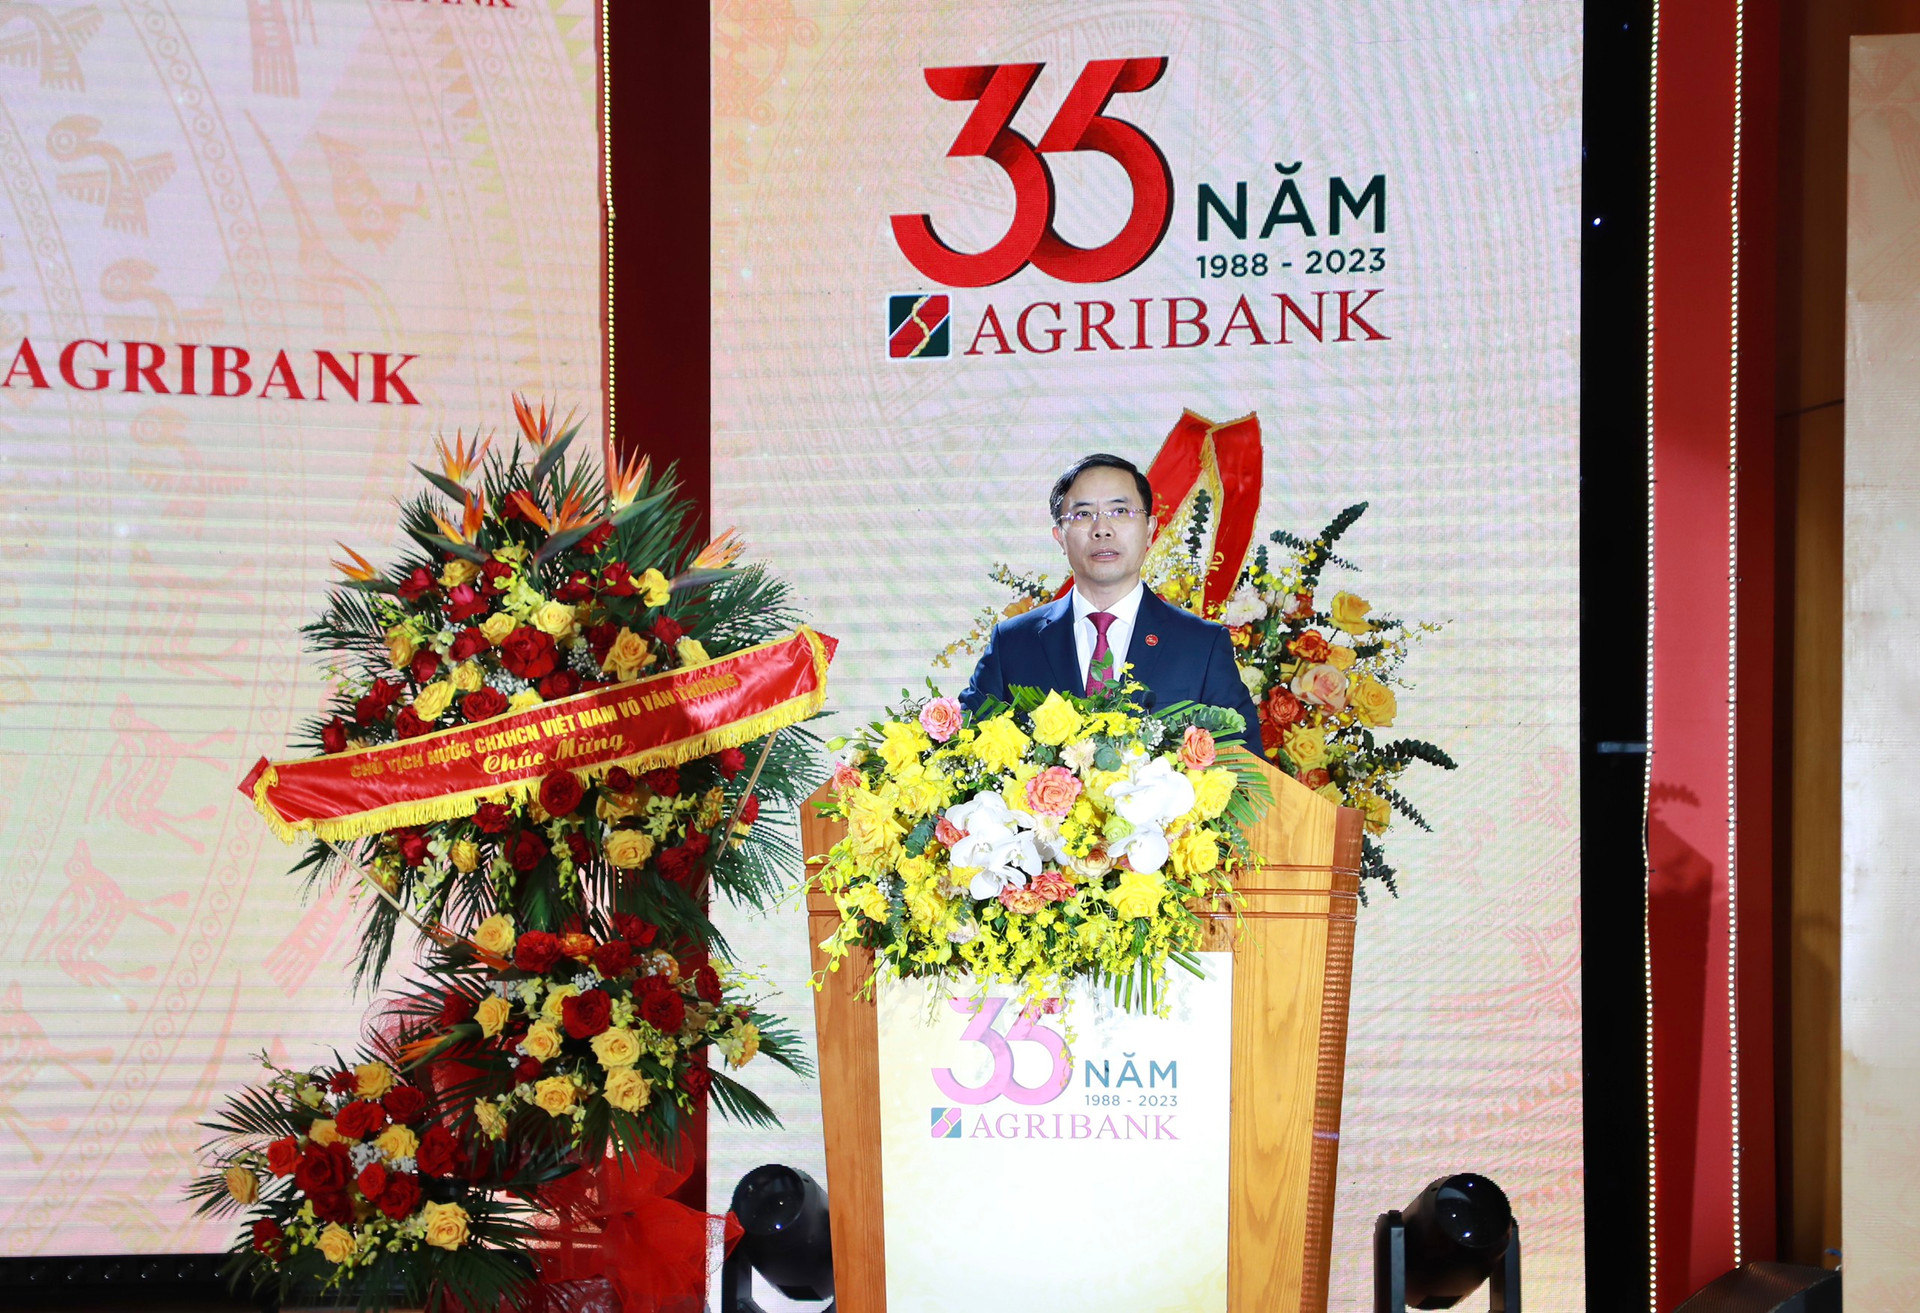 Ông Phạm Đức Ấn - Bí thư Đảng ủy, Chủ tịch HĐTV Agribank phát biểu tại buổi lễ.